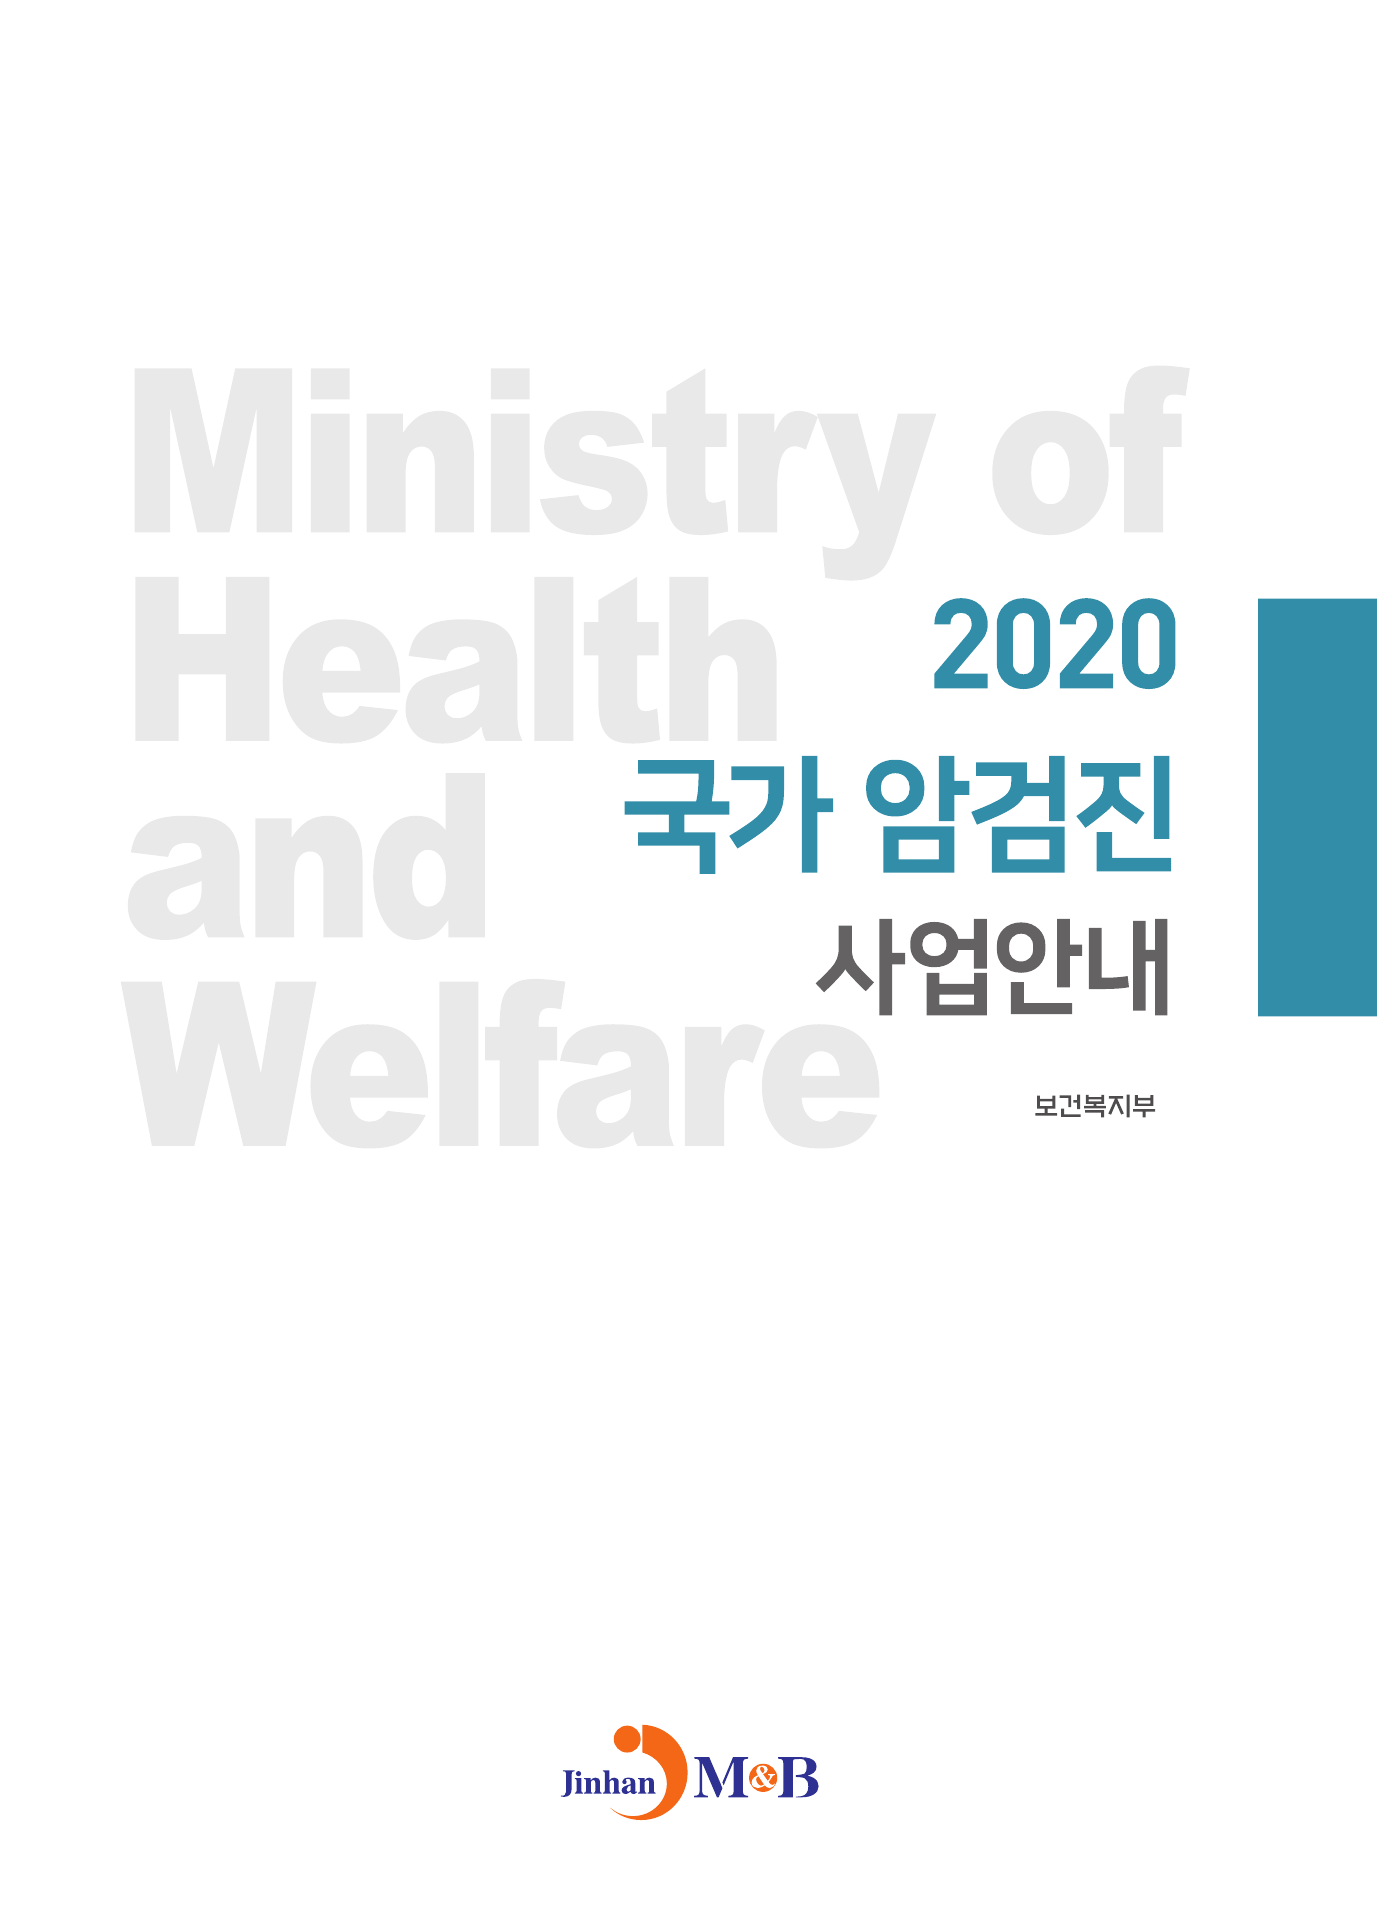 국가 암검진 사업안내(2020)